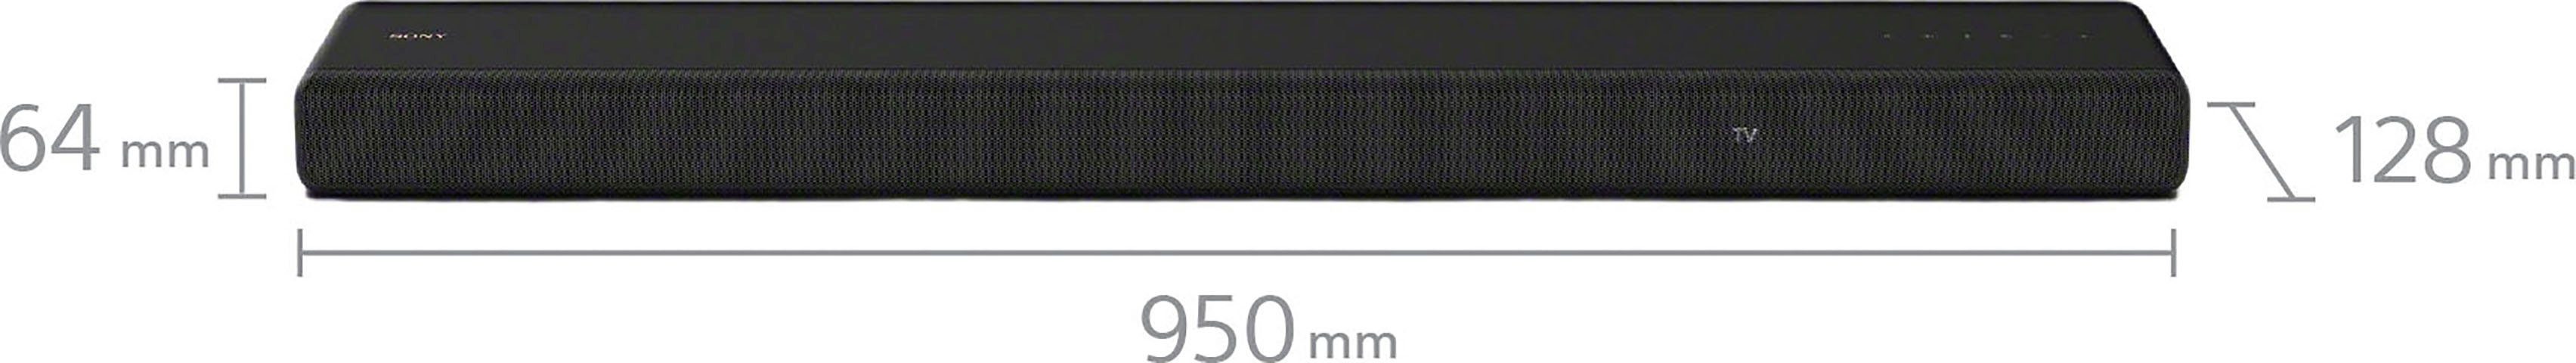 Sony HT-A3000 3.1-Kanal Soundbar 3.1 Bluetooth, 3 inkl. WLAN W, speziellem Soundbar (A2DP X-Balanced Front-Lautsprecher (WiFi), AVRCP Bluetooth, Bluetooth, Mittellautsprecher) 250